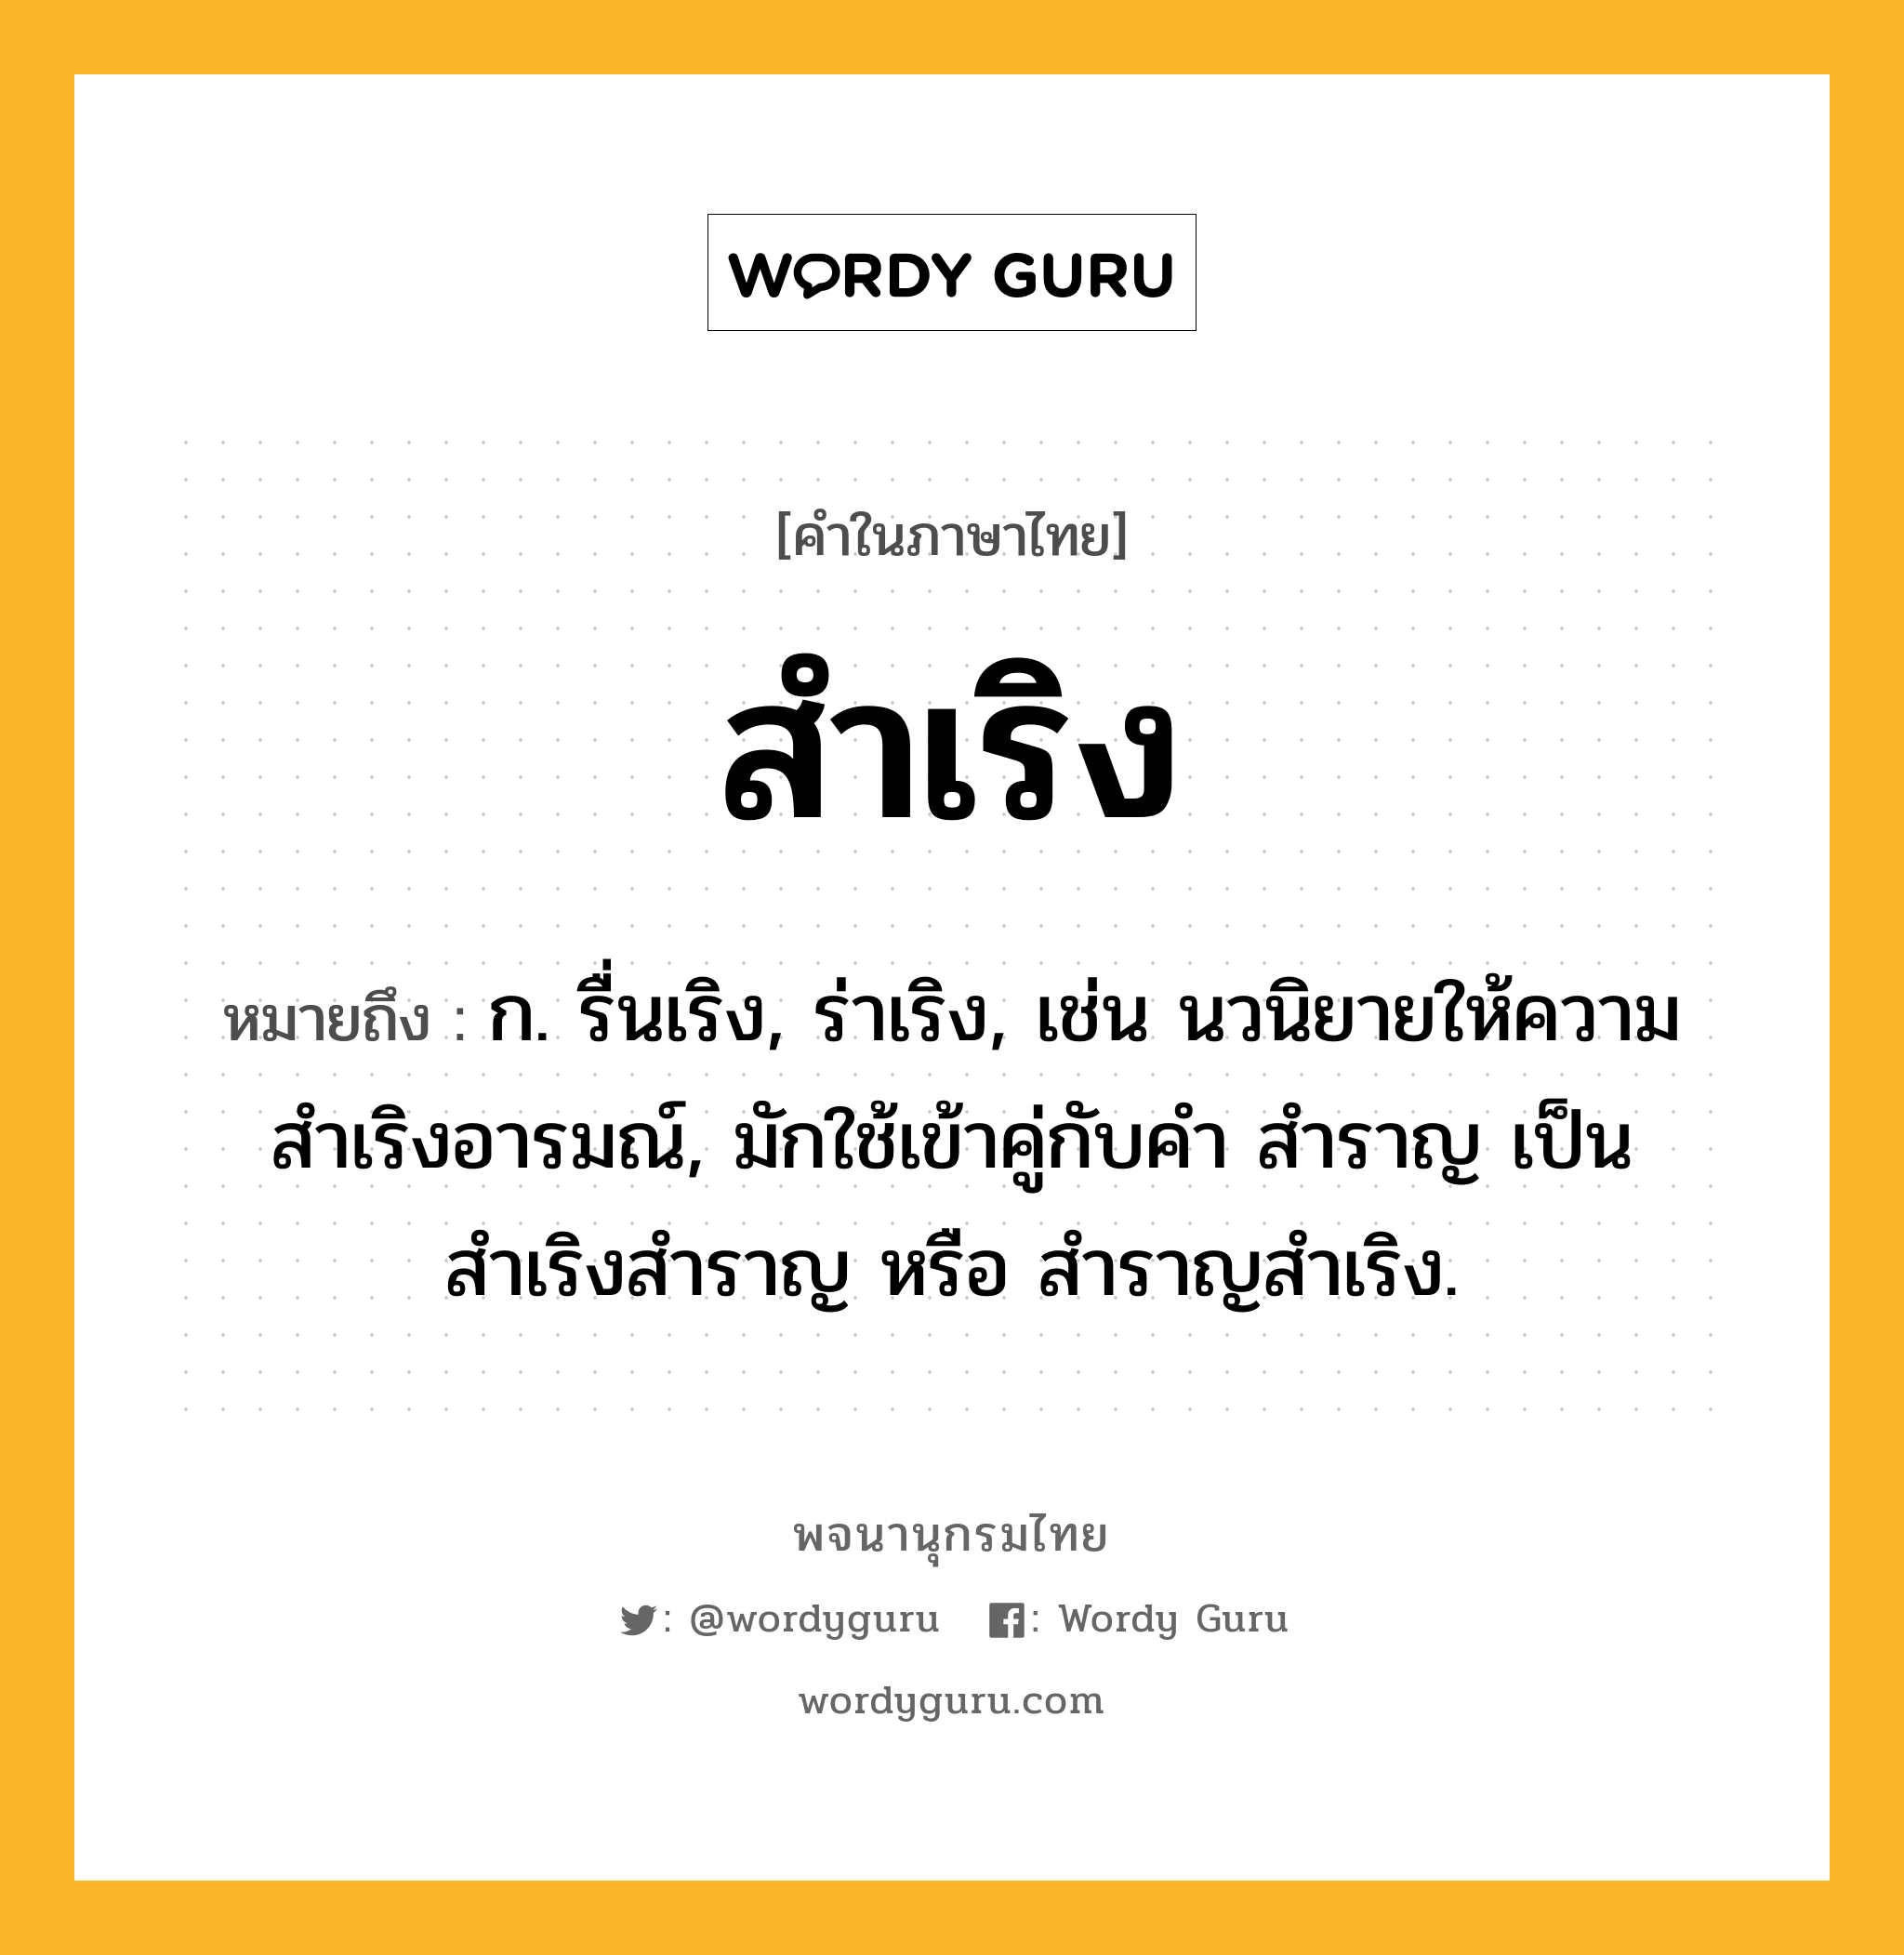 สำเริง หมายถึงอะไร?, คำในภาษาไทย สำเริง หมายถึง ก. รื่นเริง, ร่าเริง, เช่น นวนิยายให้ความสำเริงอารมณ์, มักใช้เข้าคู่กับคำ สำราญ เป็น สำเริงสำราญ หรือ สำราญสำเริง.